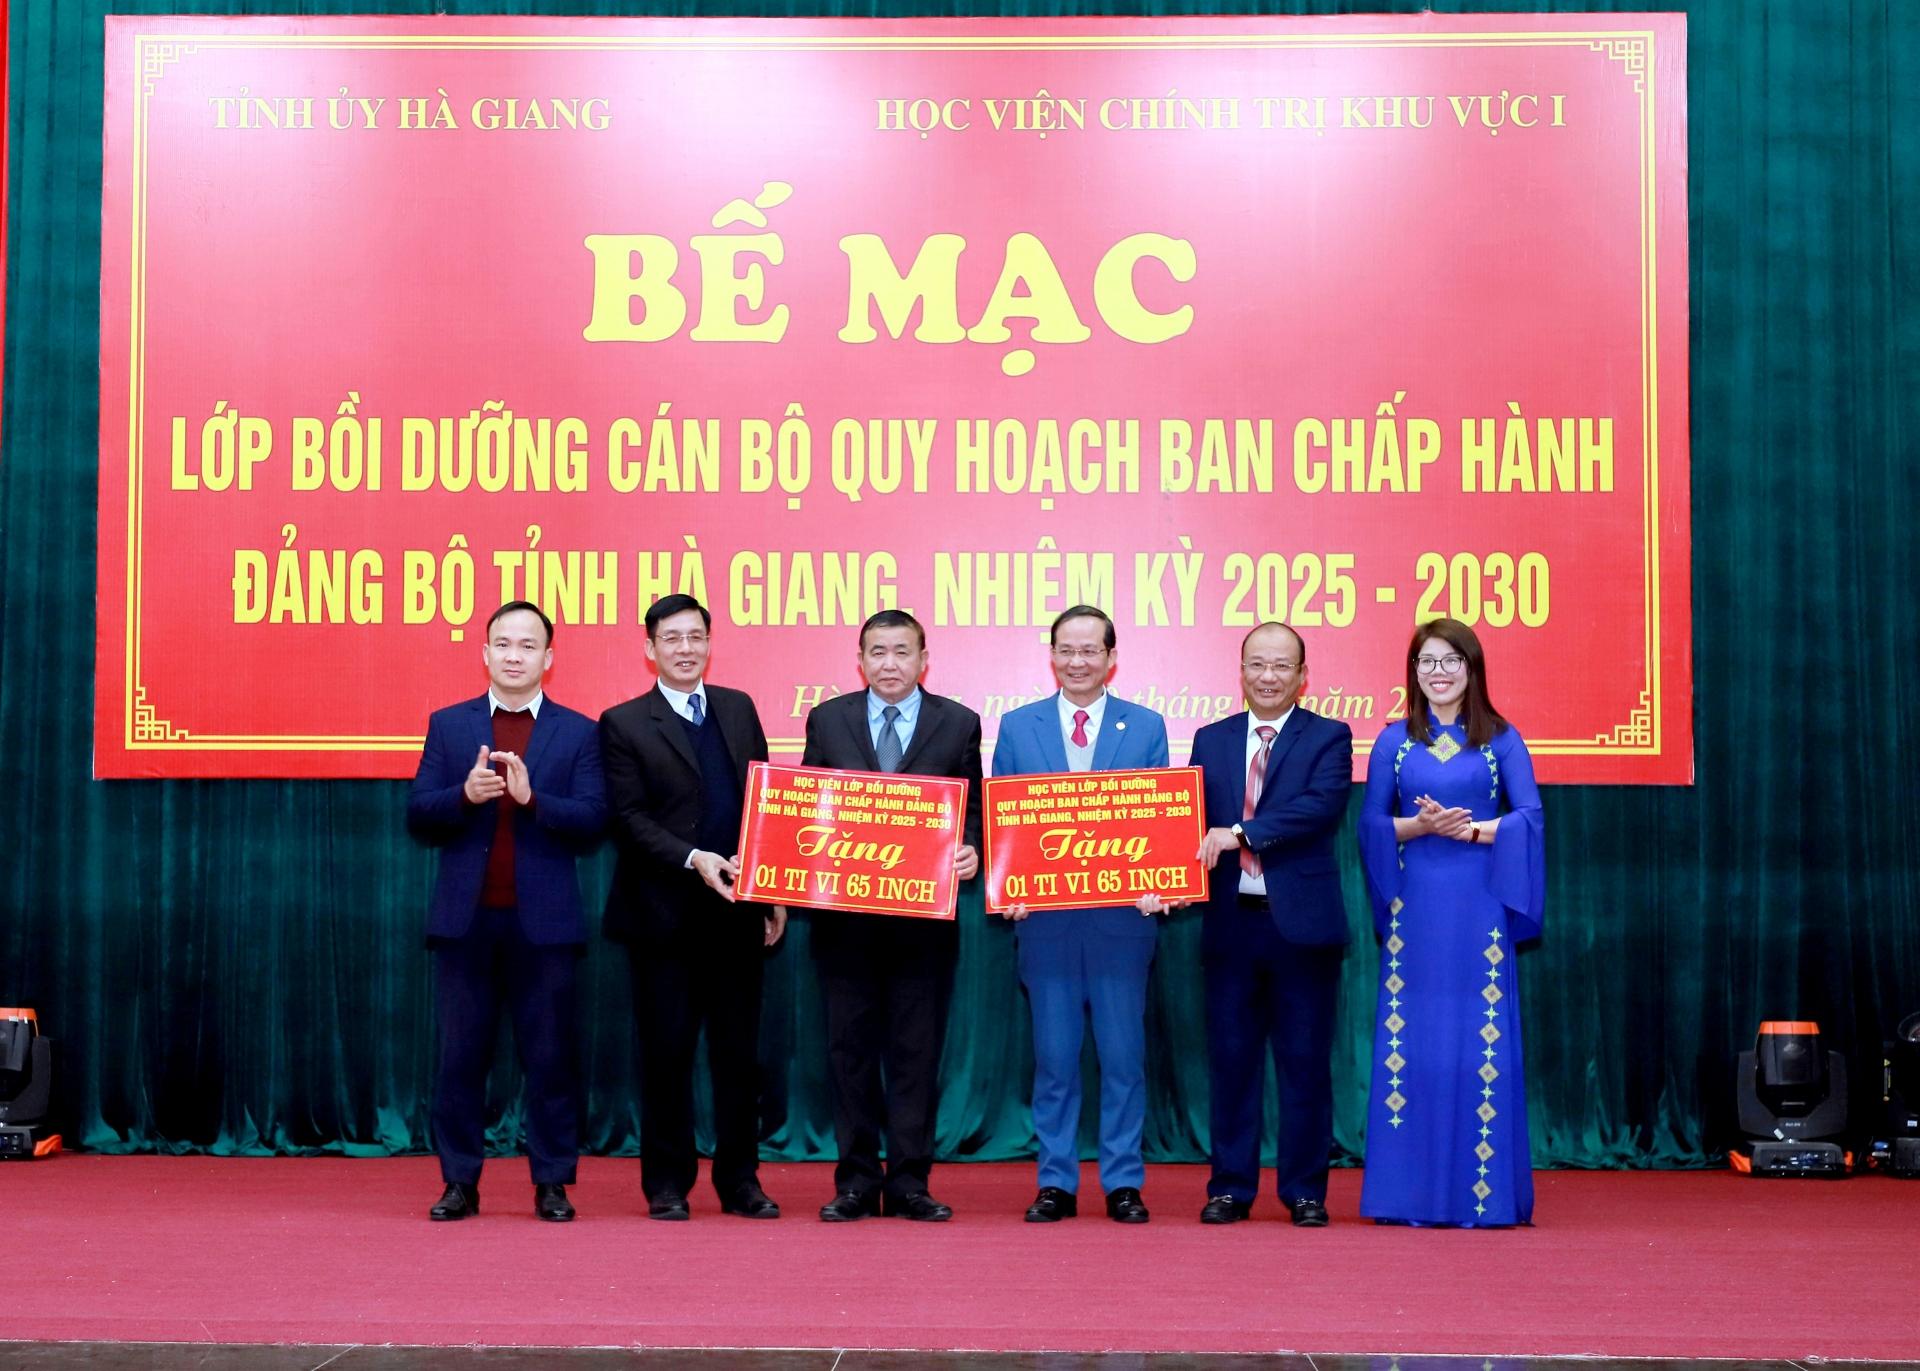 Tập thể lớp bồi dưỡng cán bộ quy hoạch BCH Đảng bộ tỉnh Hà Giang nhiệm kỳ 2025 - 2030 tặng quà cho Ban Tổ chức Tỉnh ủy và Trường Chính trị tỉnh.